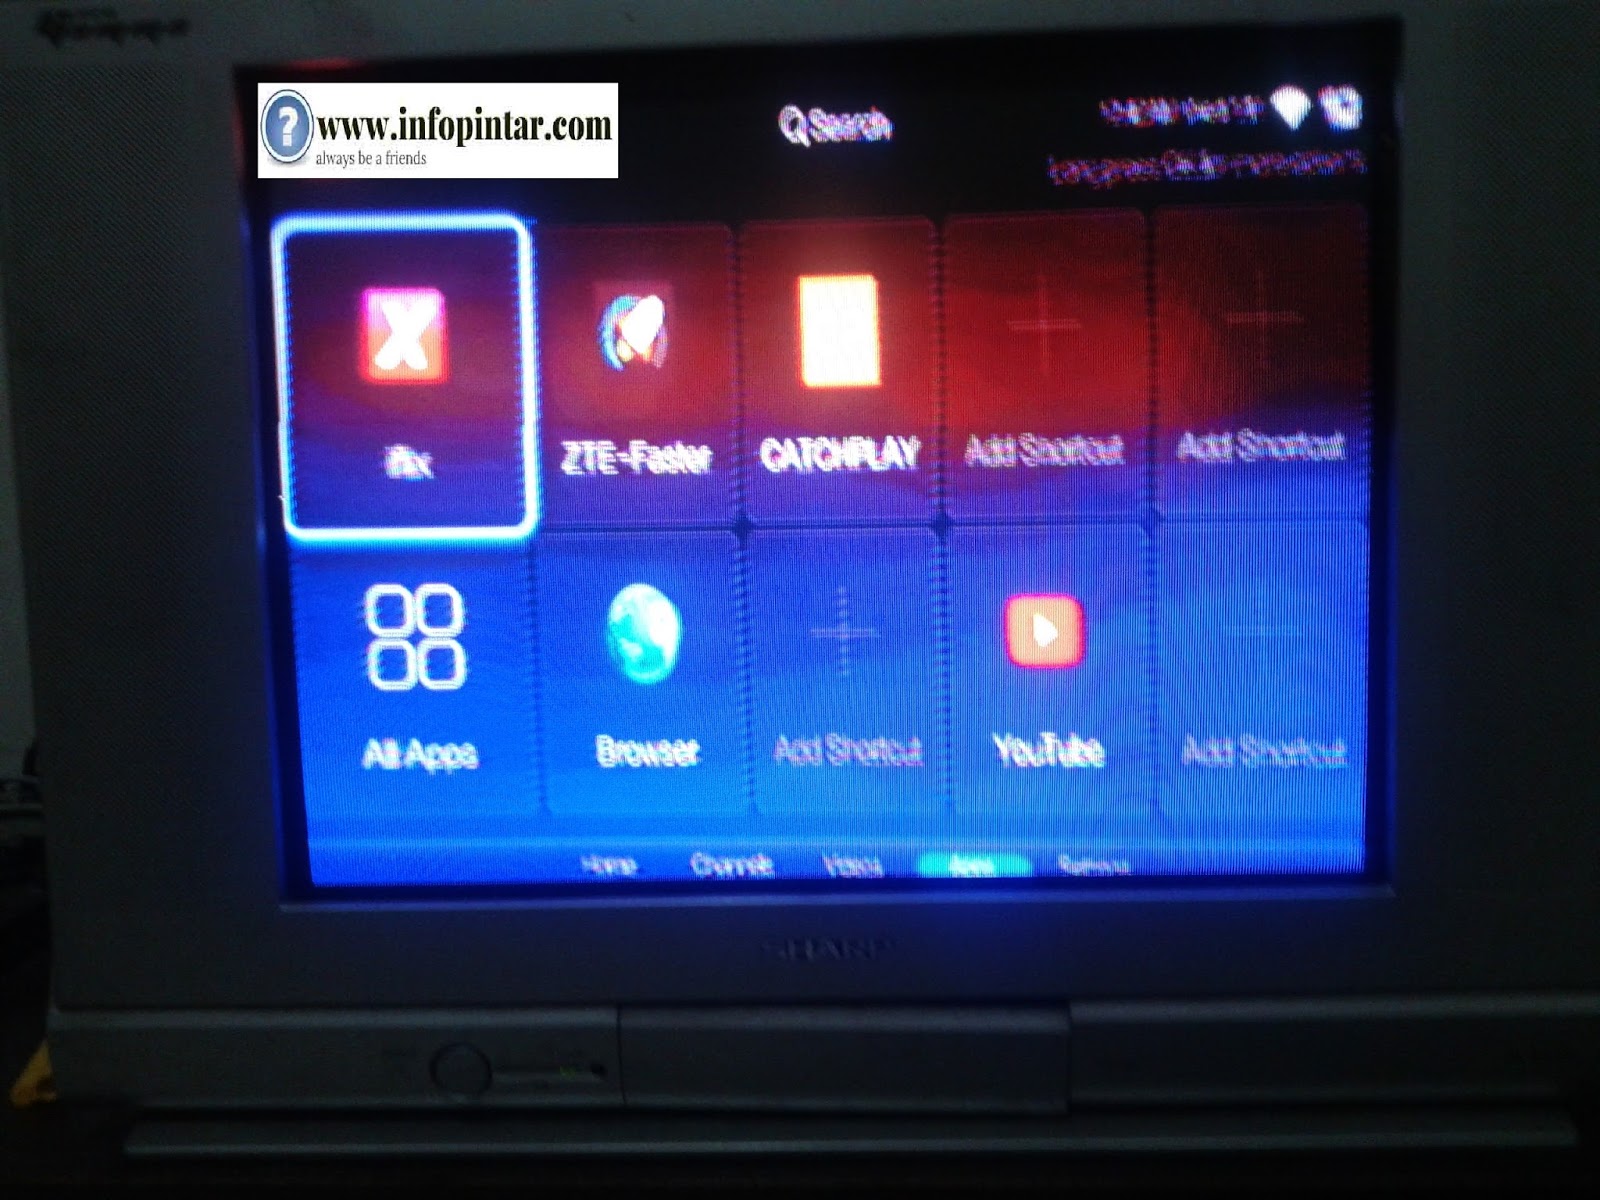 Kini TV Tabung LCD Plasma LED sudah bisa dijadikan Smart TV adapun syarat utamanya harus ada Connector AV IN atau HDMI karena akan menerima gambarnya dan